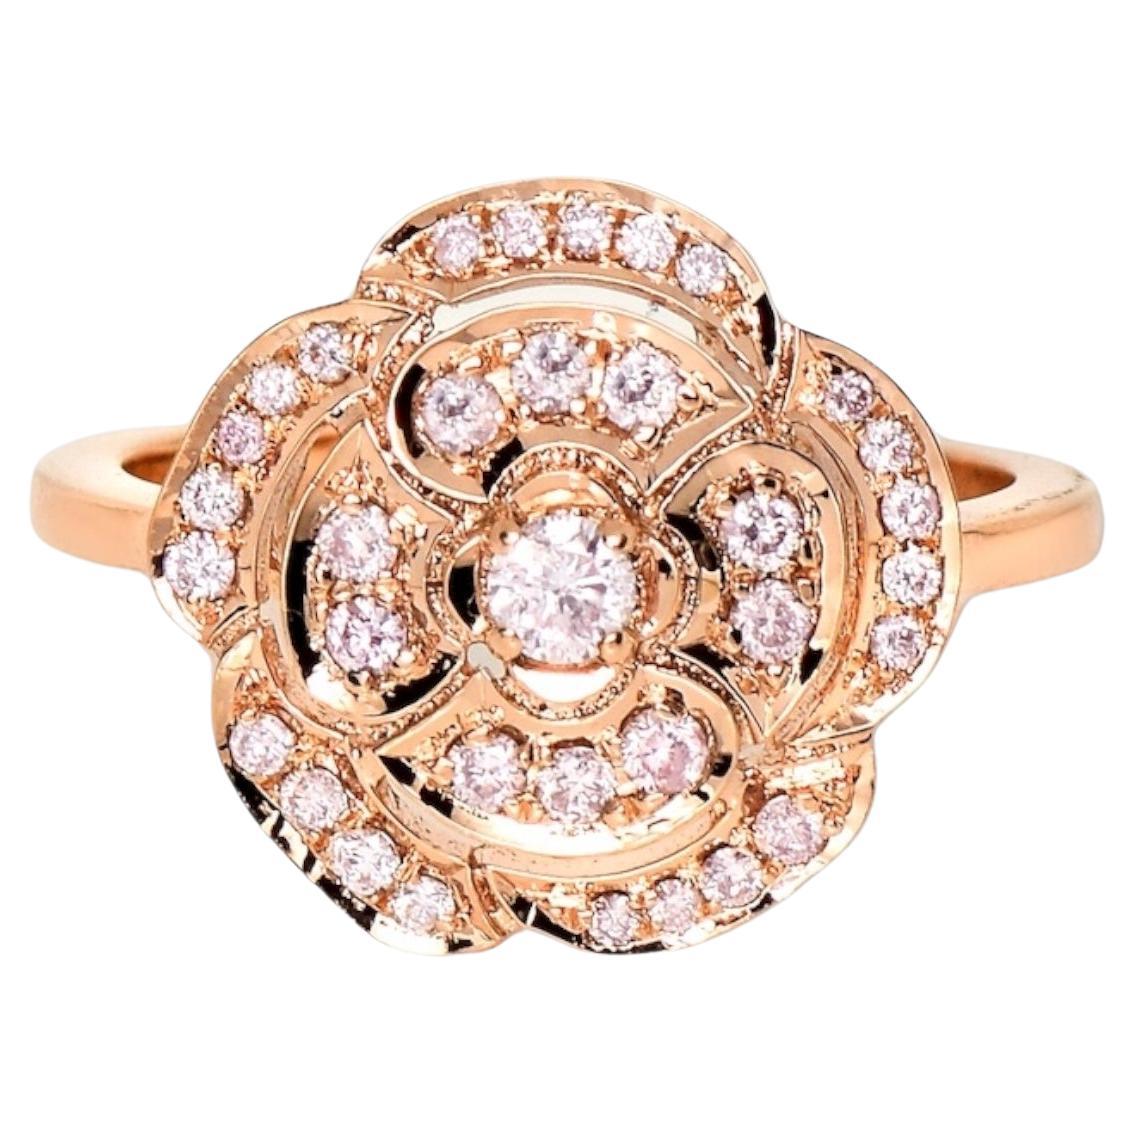 IGI 14K 0.40 ct Natural Pink Diamonds Rose Design Antique Art Deco Ring